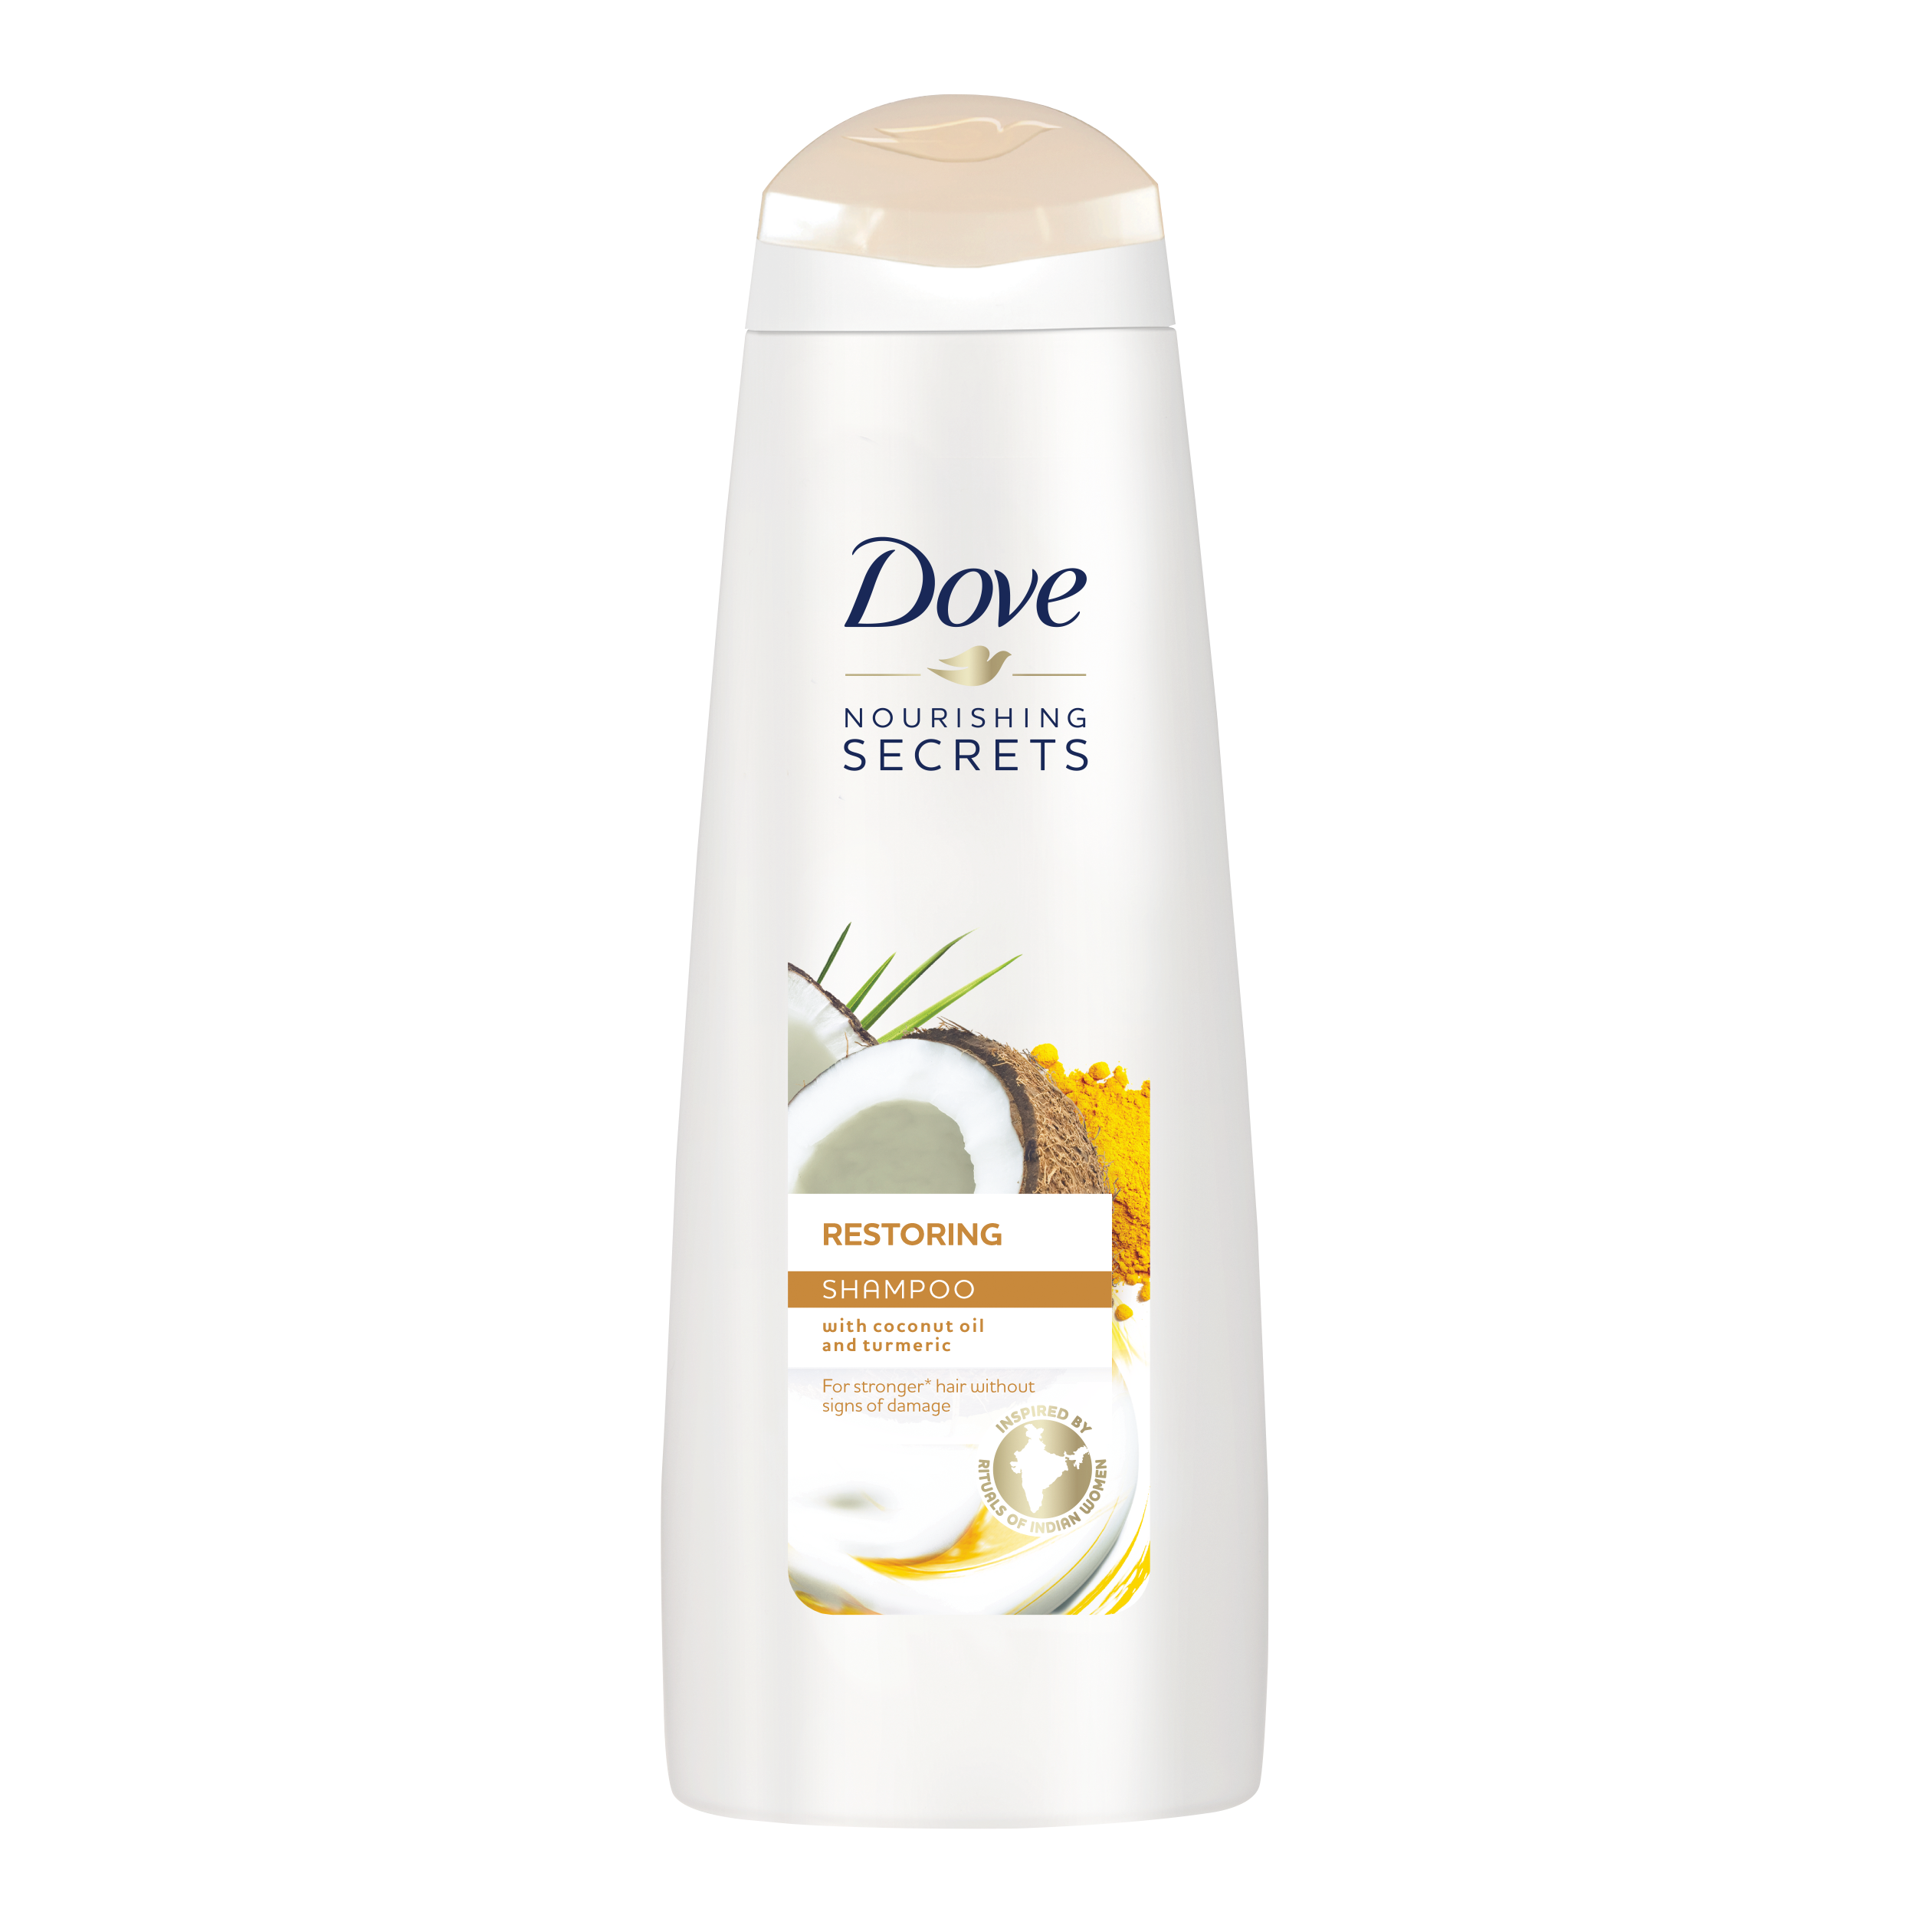 Dove Nourishing Secrets Restoring Shampoo